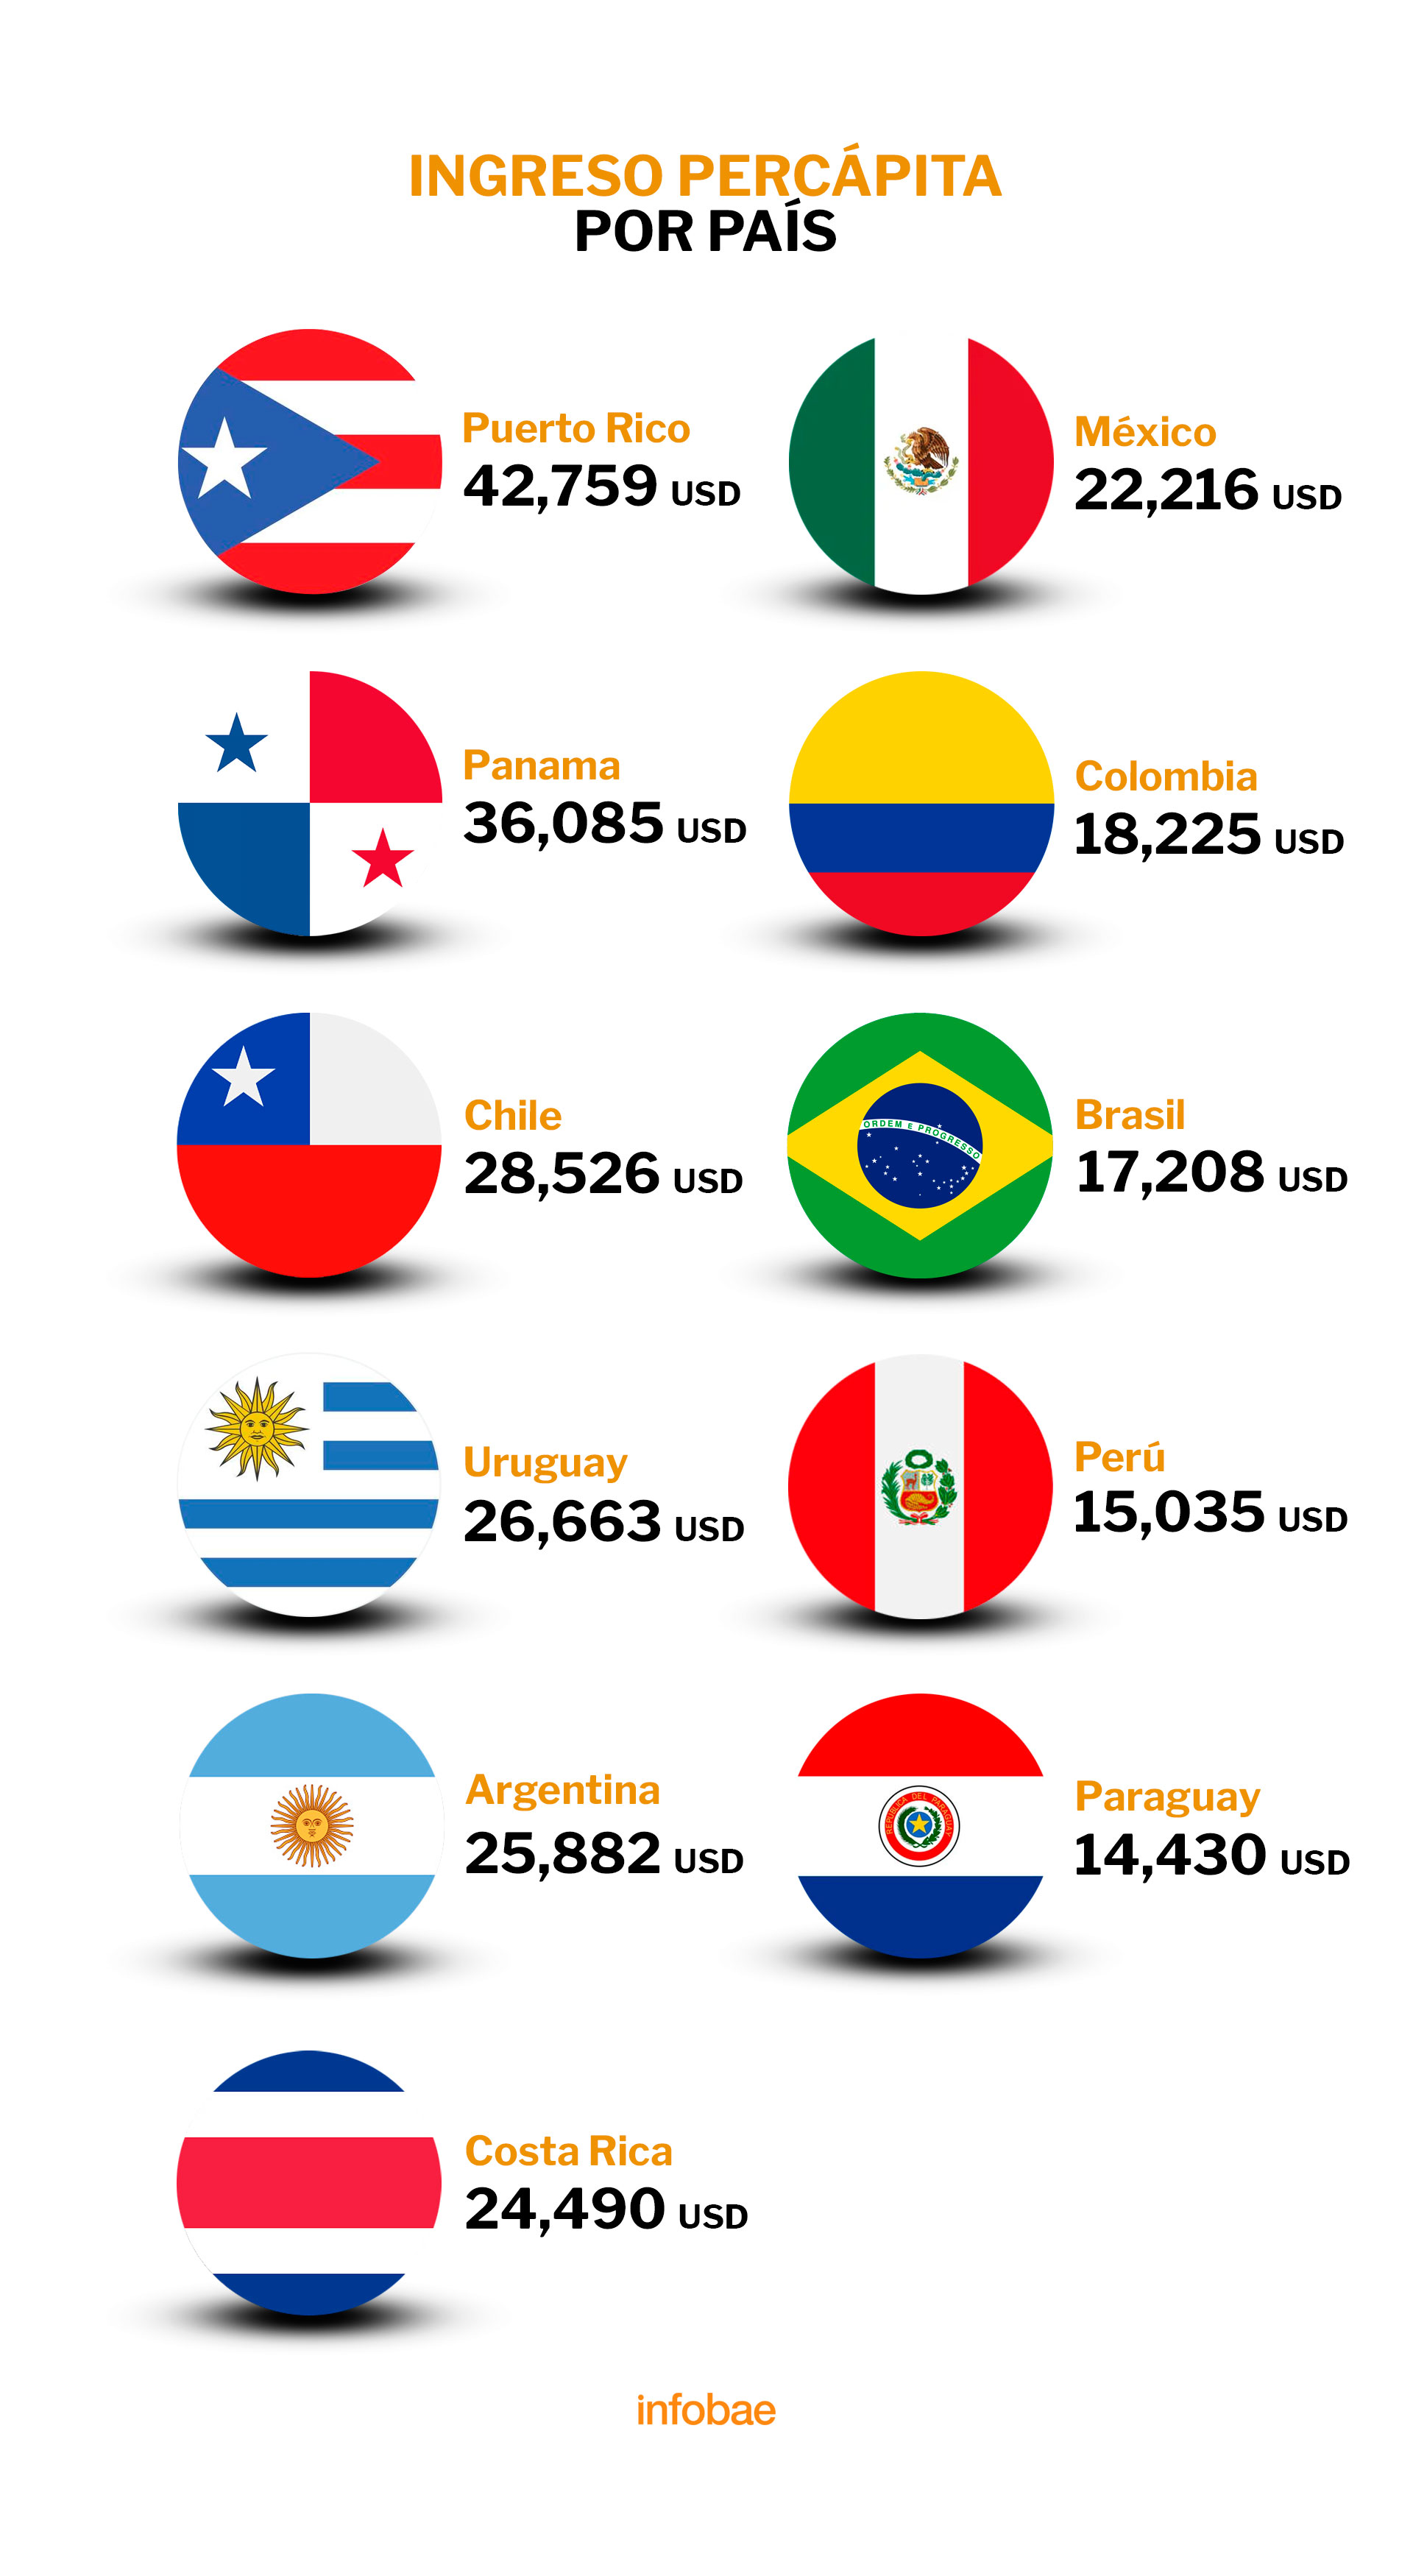 ¿Cuál es el país más rico Venezuela o Colombia